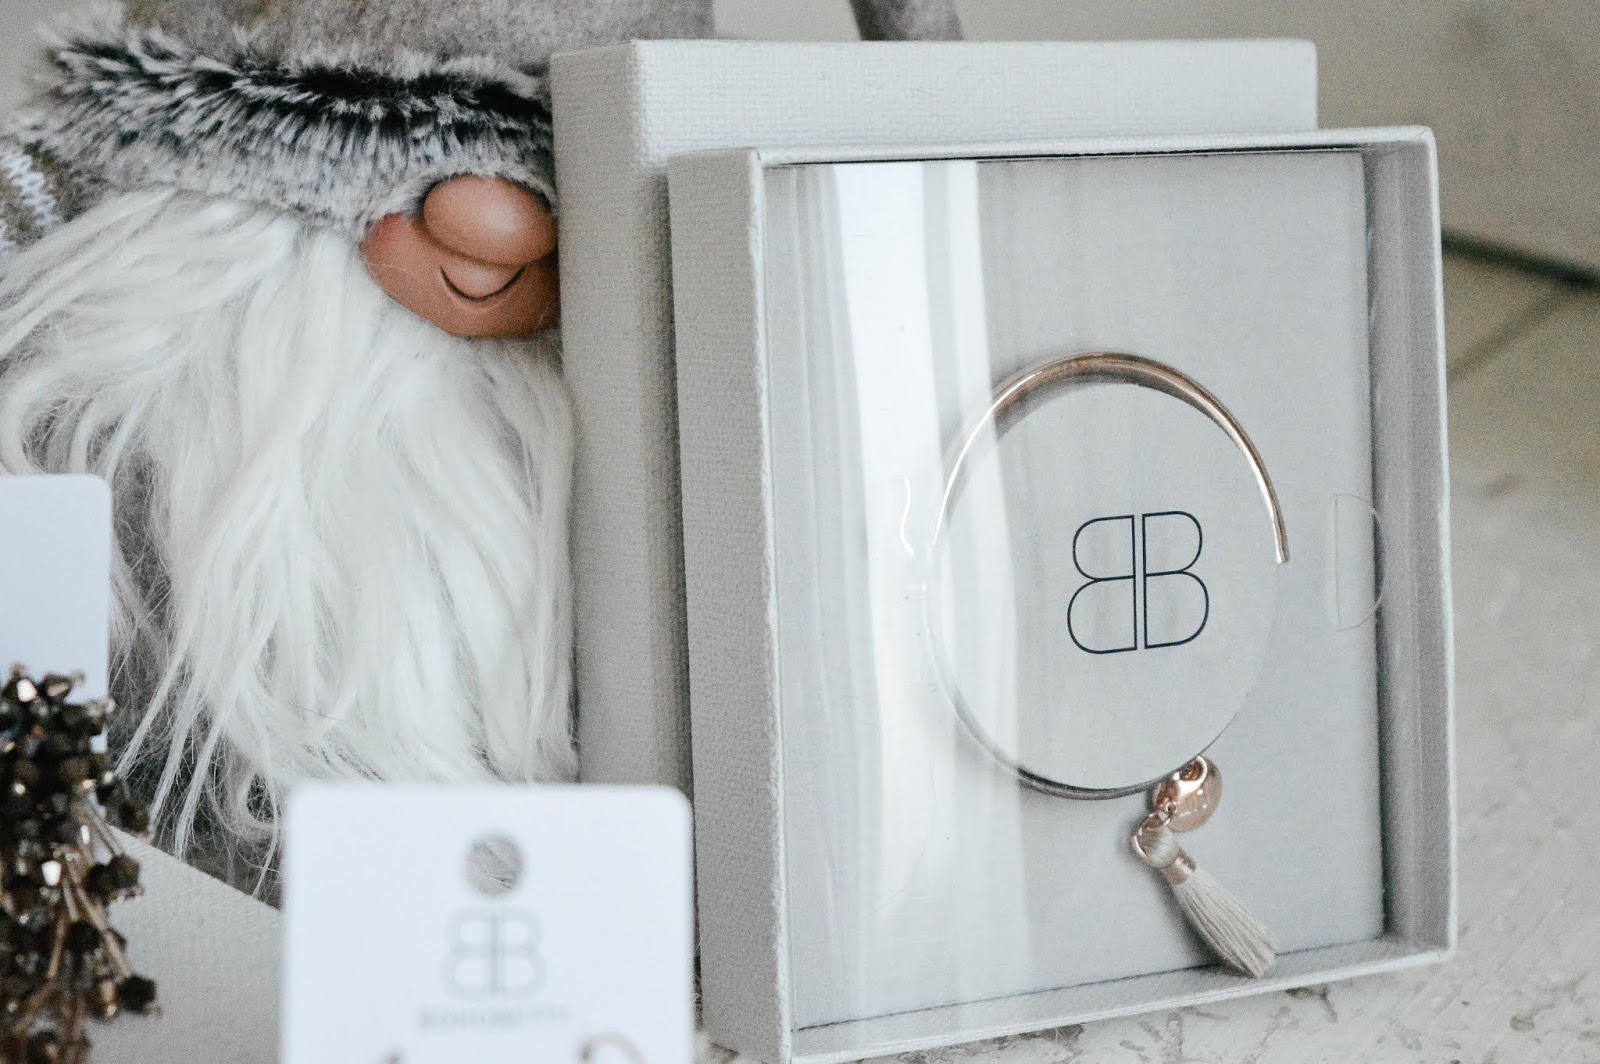 Boho Betty Christmas Gift Sets, Hampshire blogger, fashion blogger, style blog